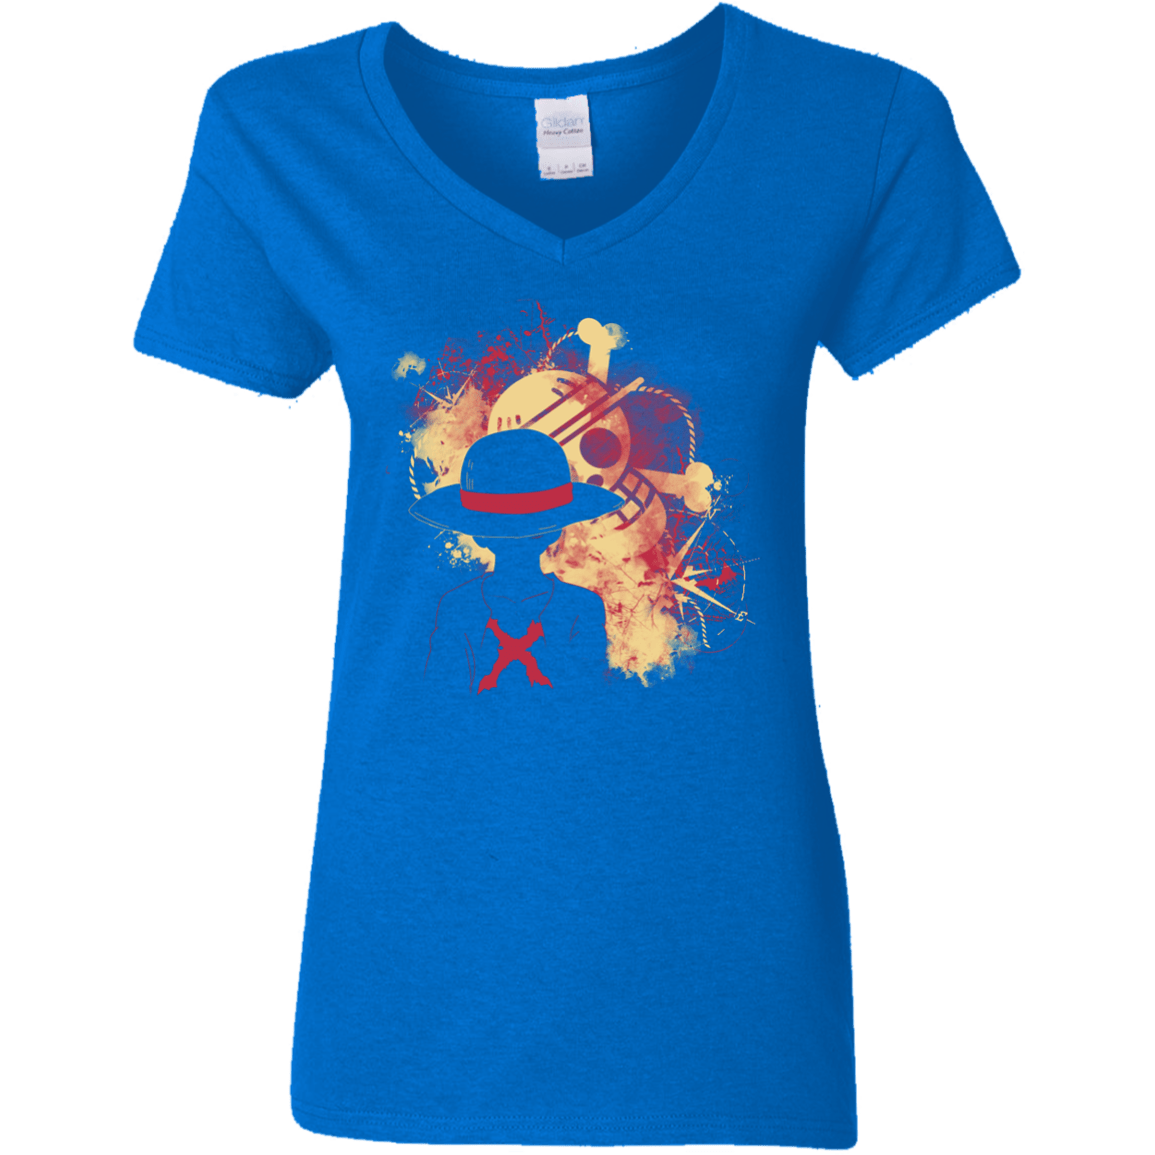 T-Shirts Royal / S Luffy 2018 Women's V-Neck T-Shirt